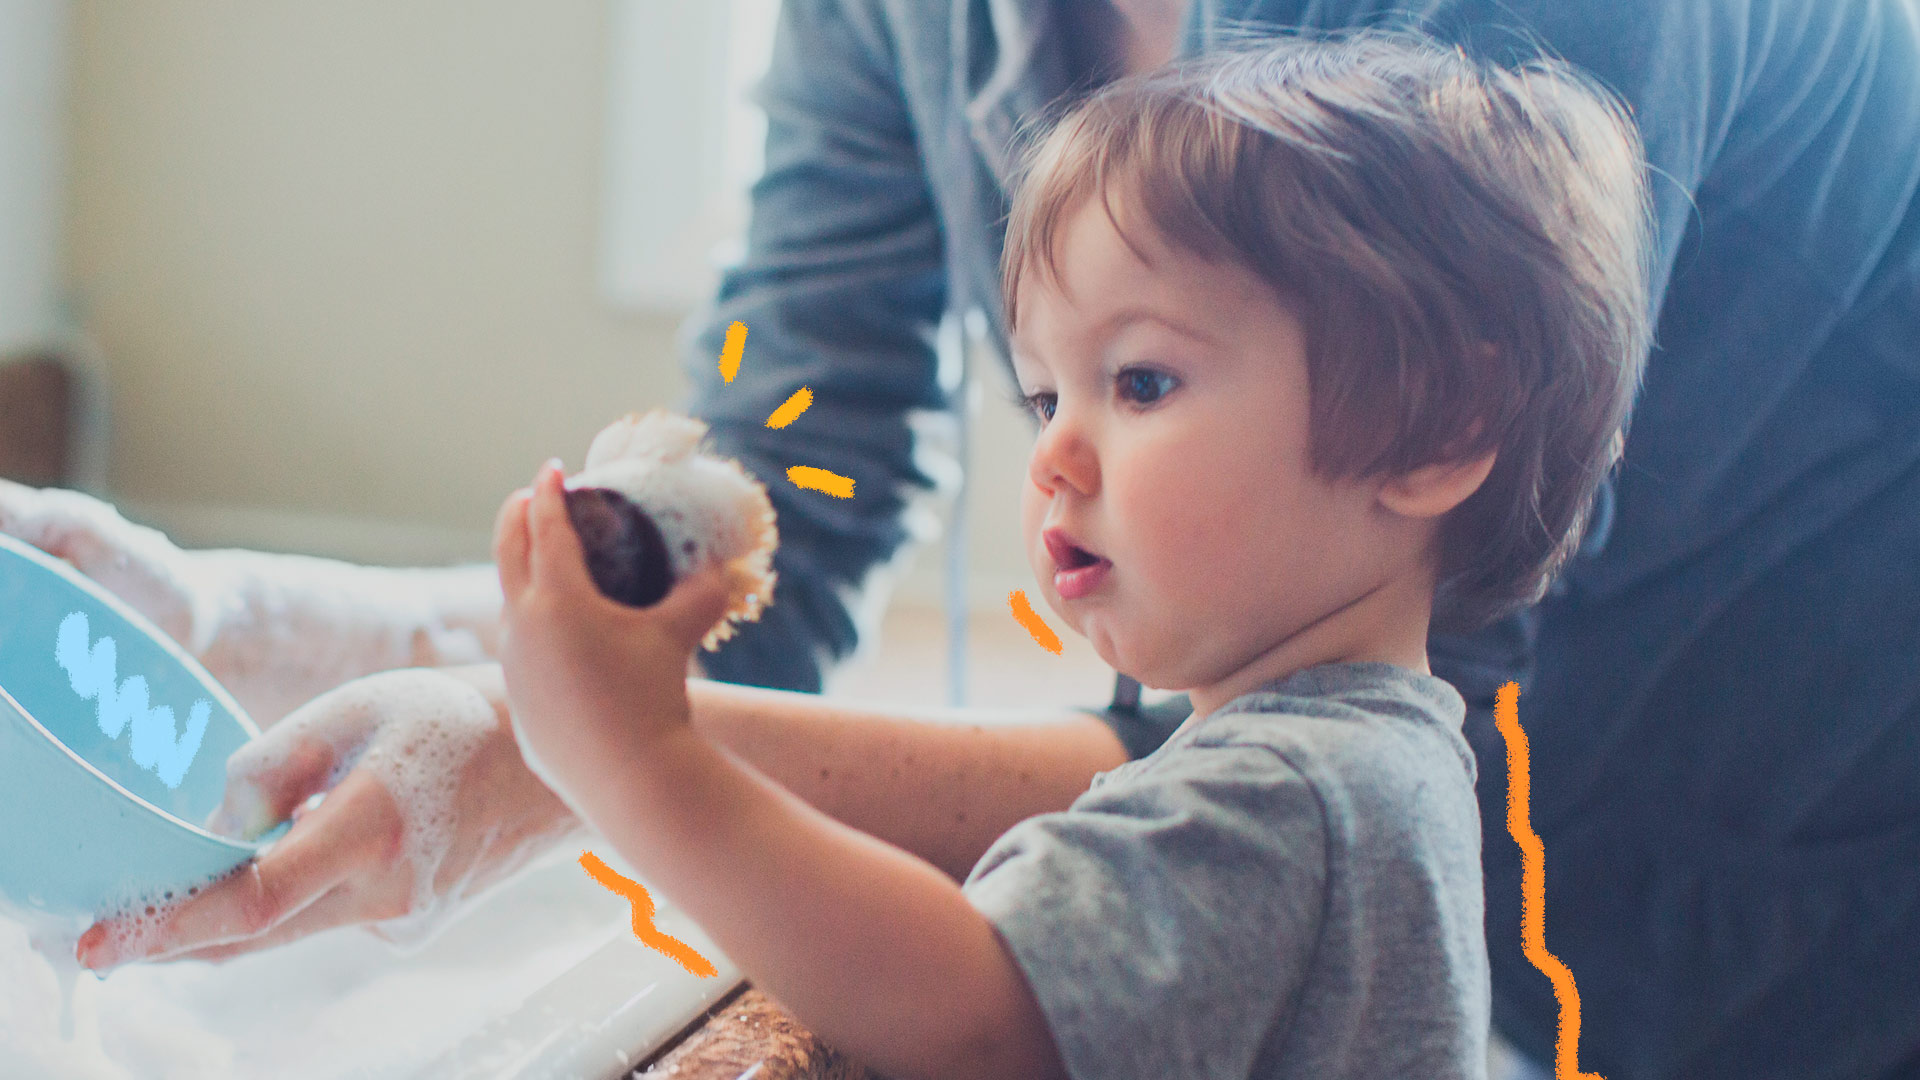 Imagem de um menino branco, de cabelos castanhos, aparentando dois anos está segurando uma esponja de lavar louças em matéria que discute masculinidades.